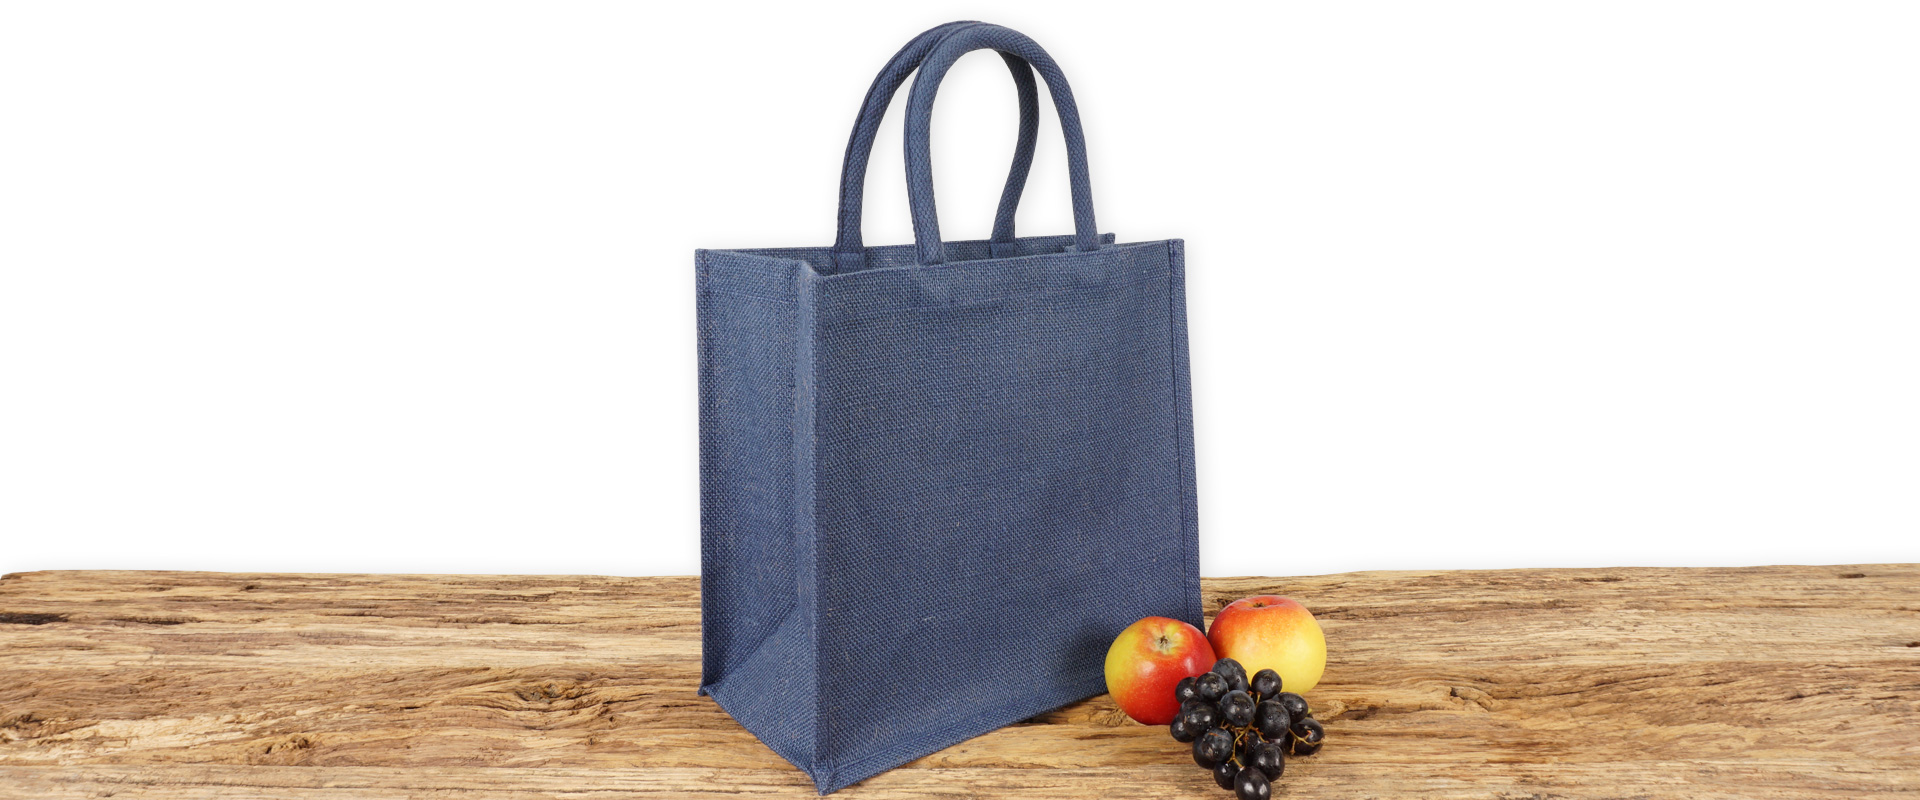 Einkaufstasche aus Jute zum Bedrucken, dunkelblau mit Seiten-Bodenfalte, klein und mit kurzen Tragegriffen auf Holz.